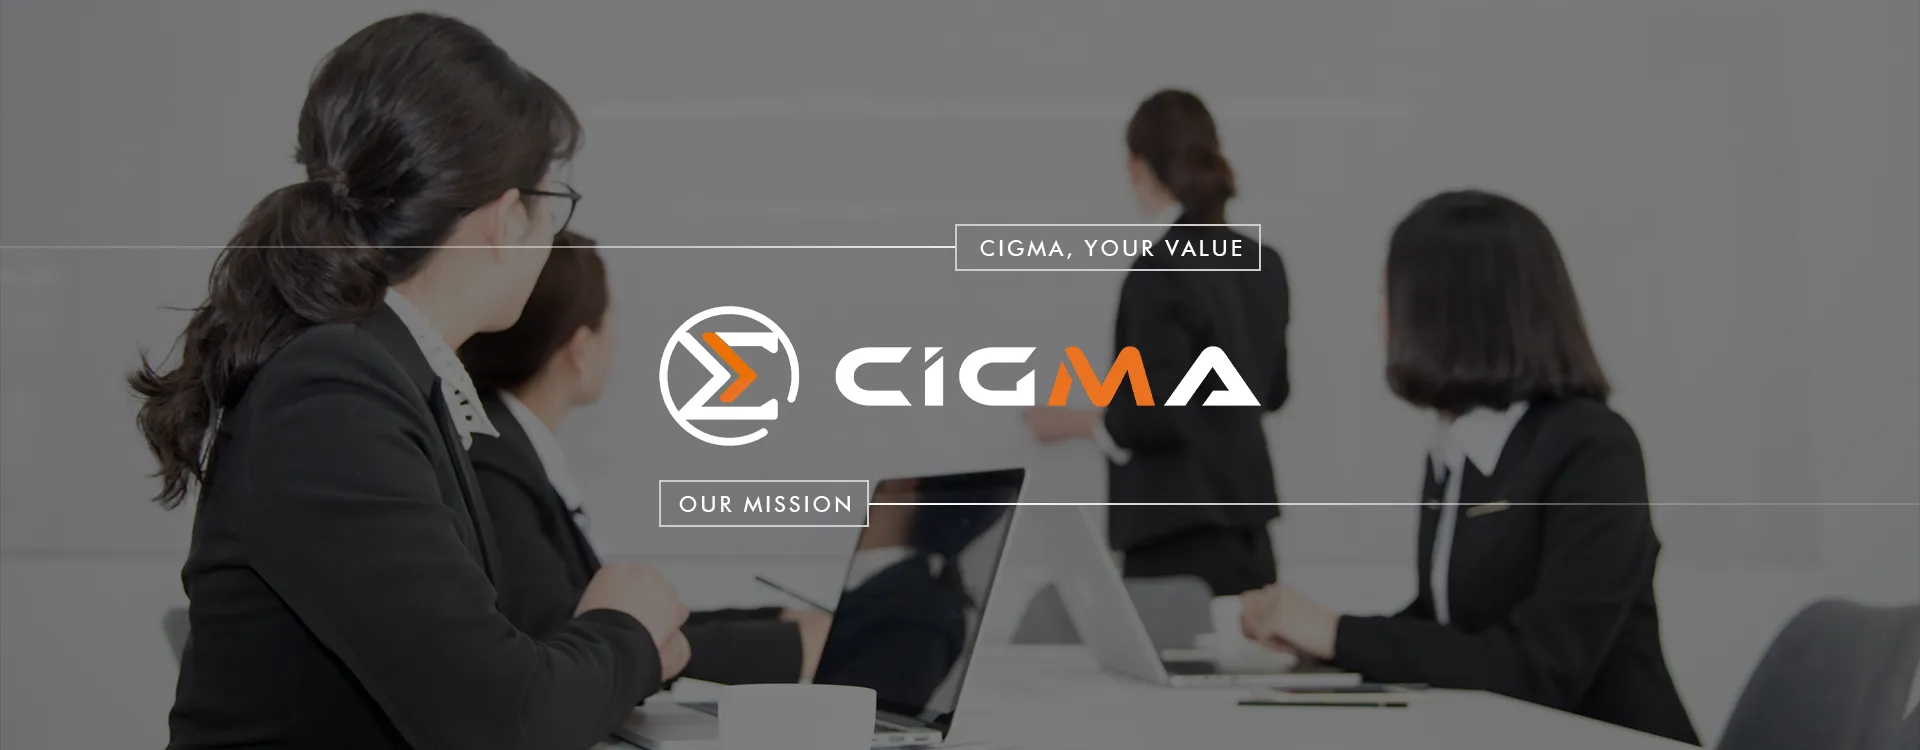 Cigma Global